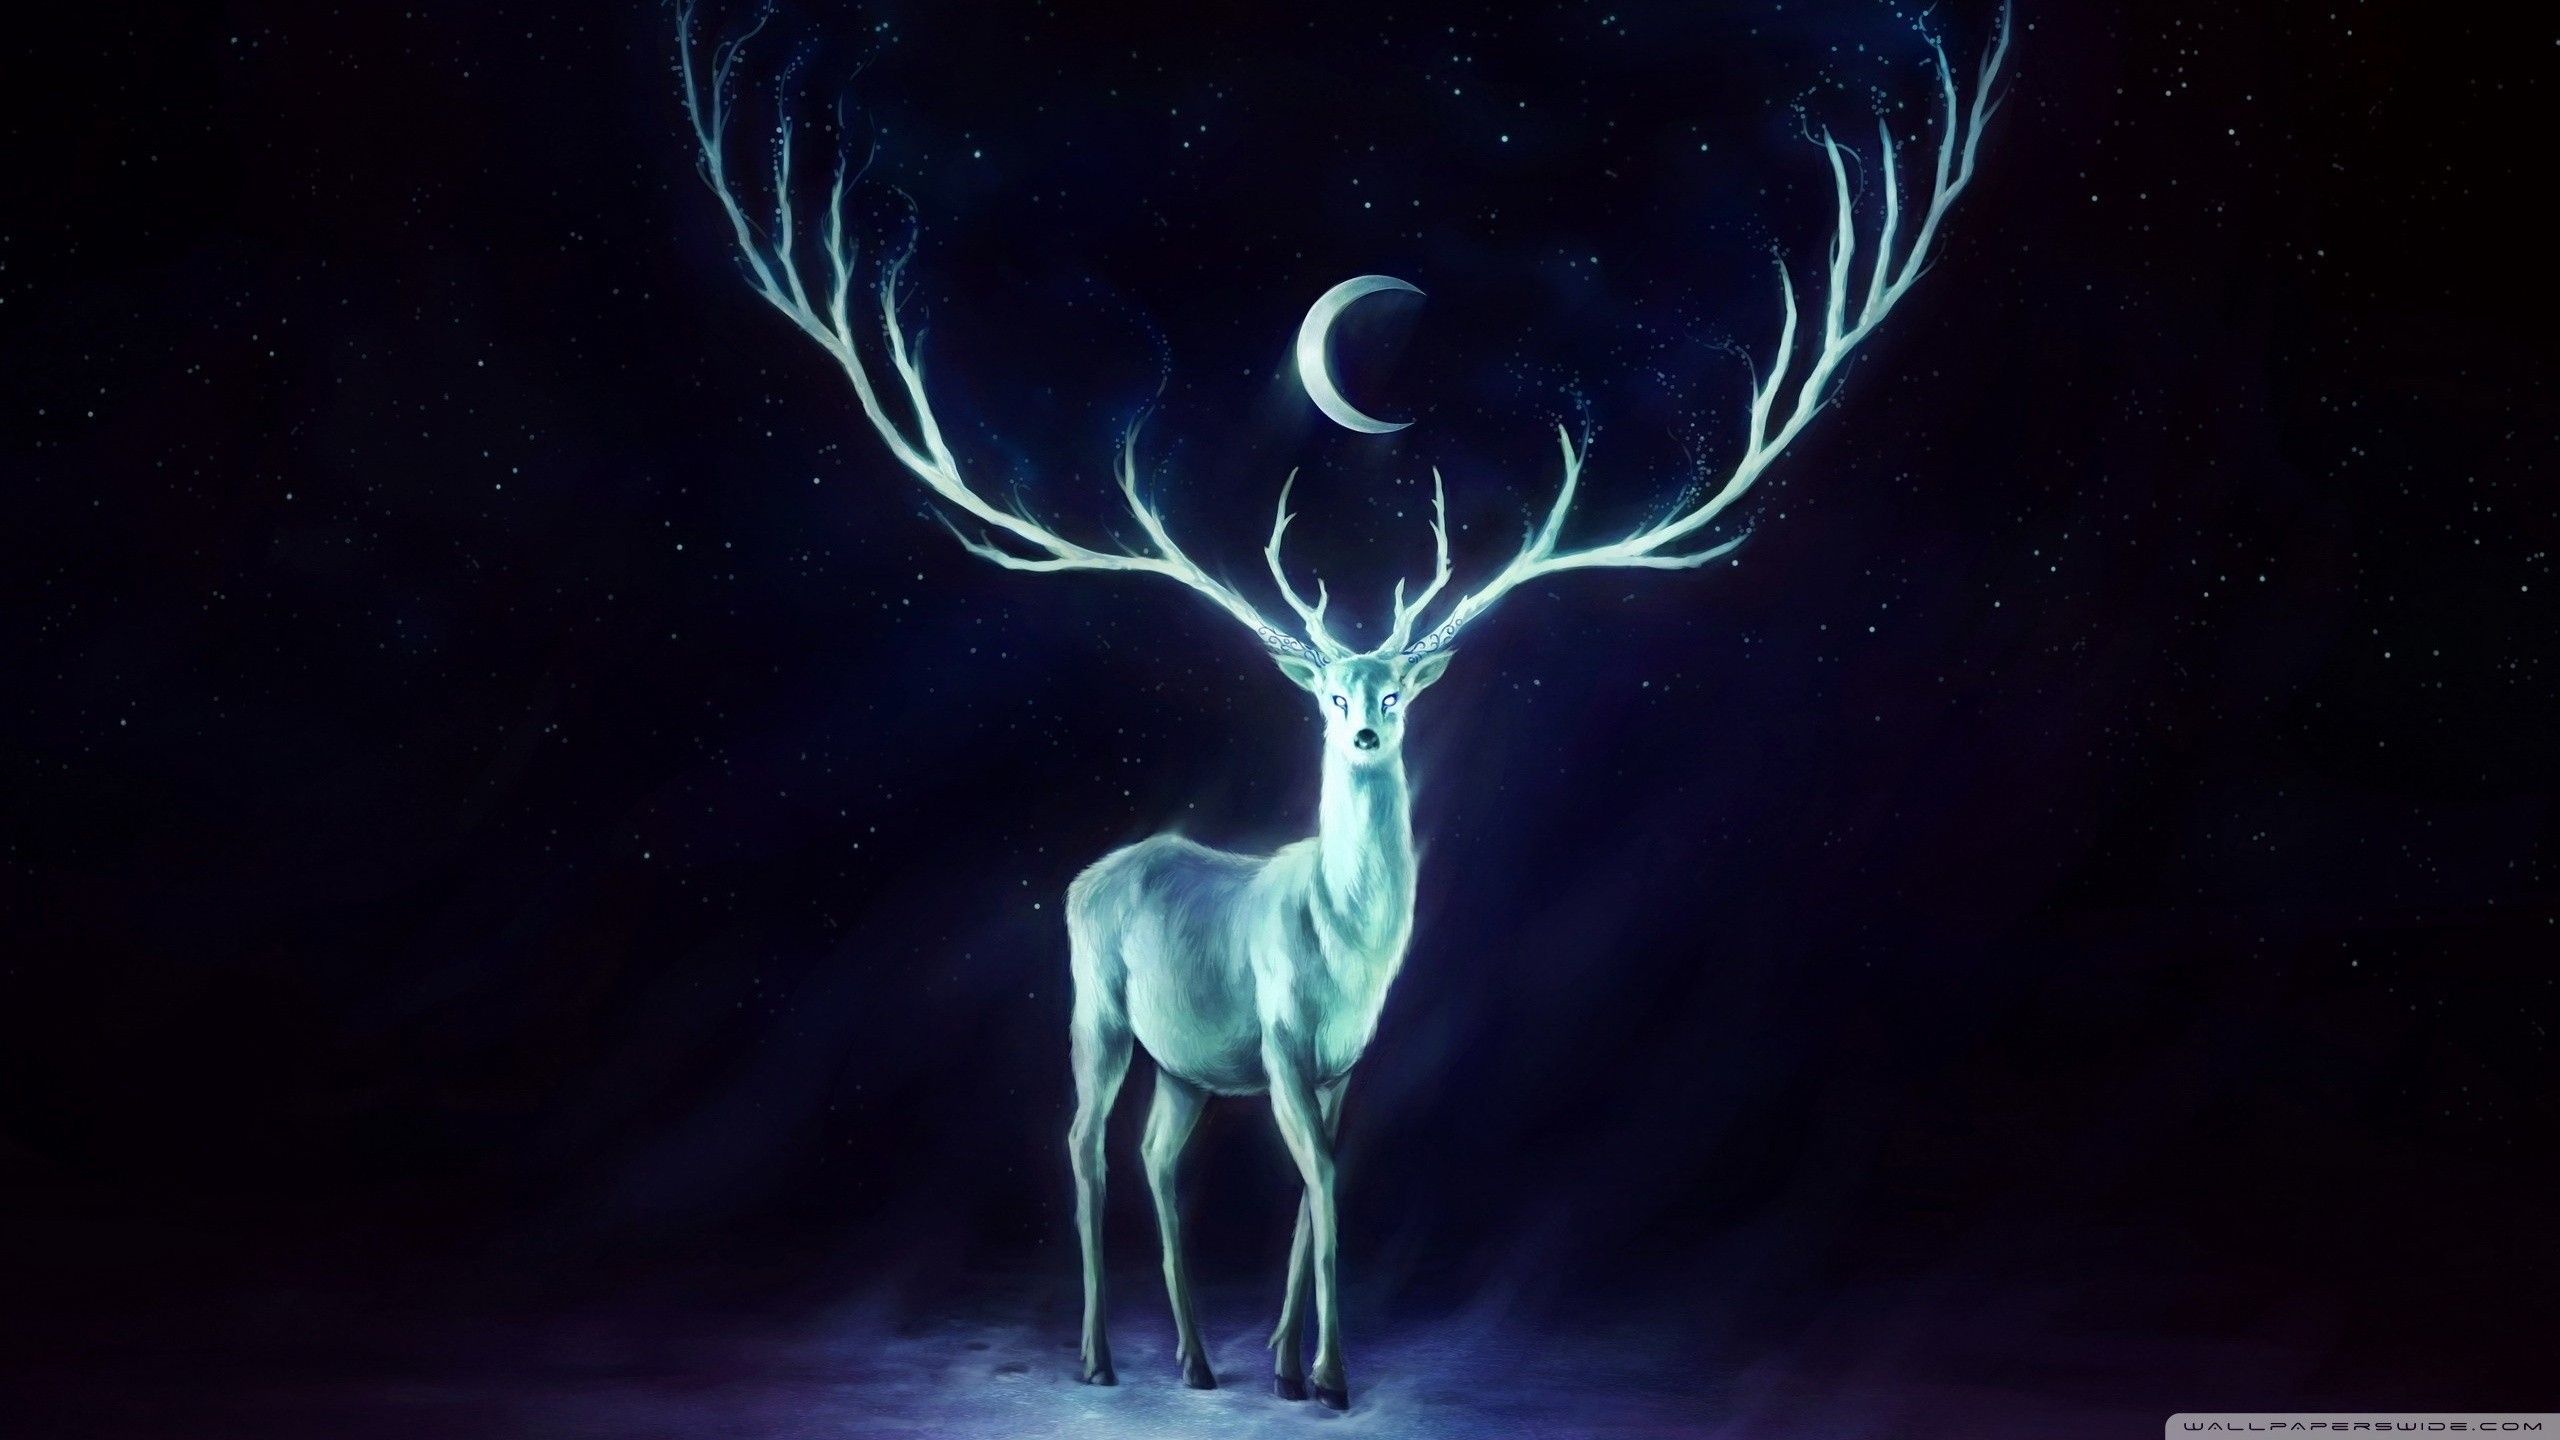 Spectral deer [2560×1440]